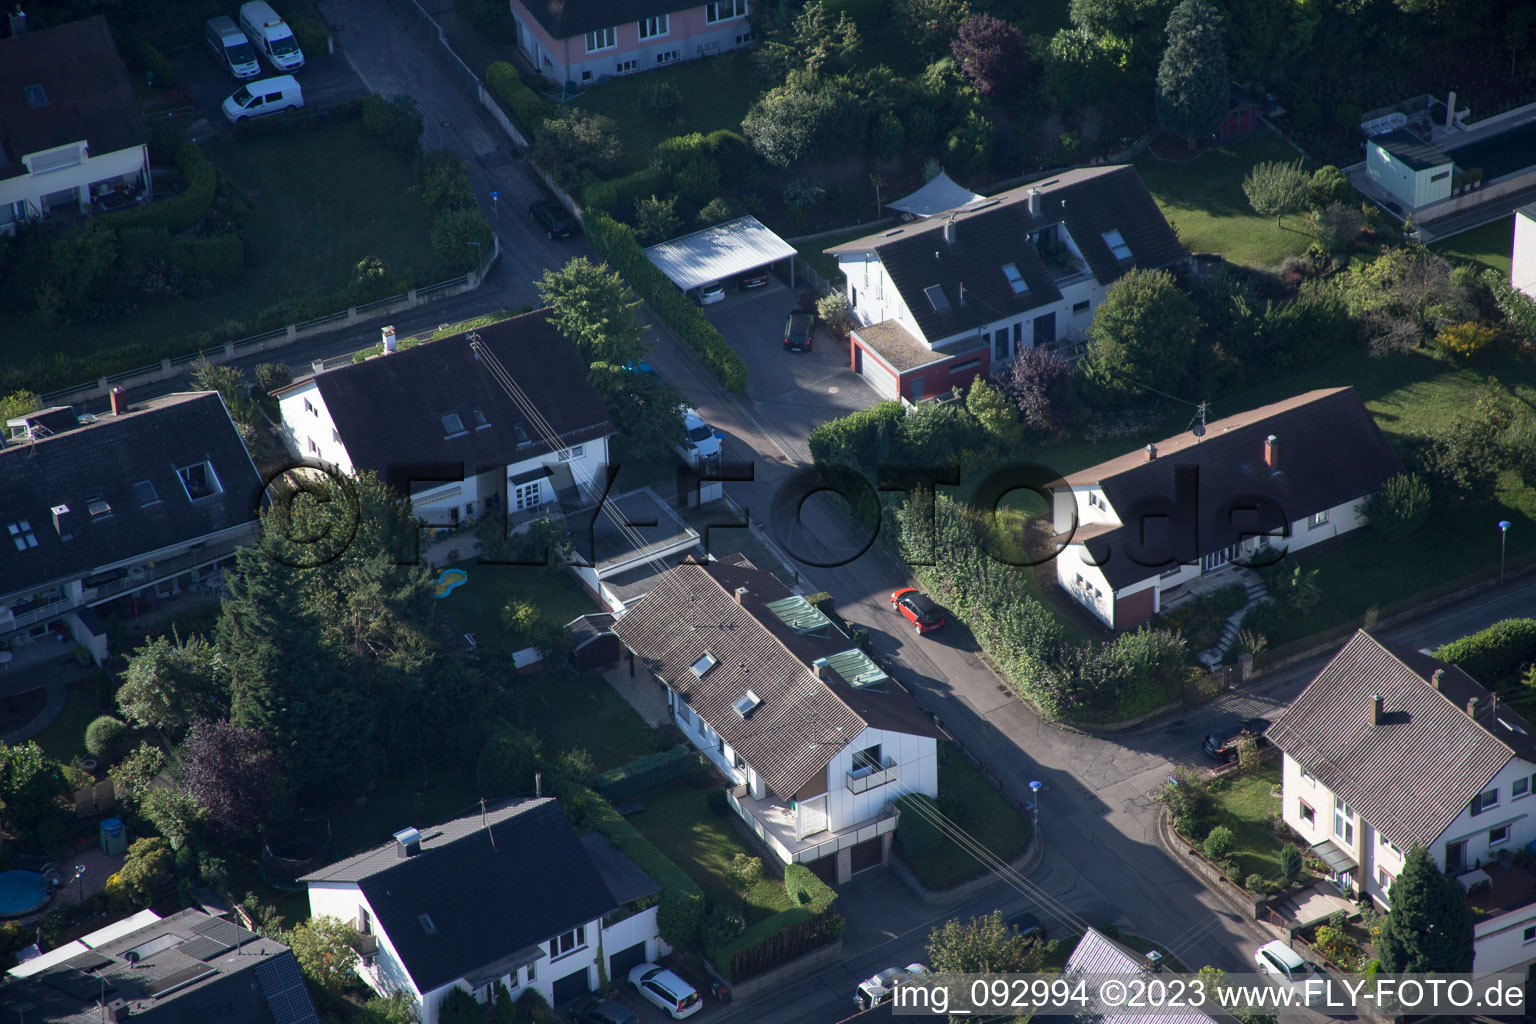 Ortsteil Wolfartsweier in Karlsruhe im Bundesland Baden-Württemberg, Deutschland von der Drohne aus gesehen